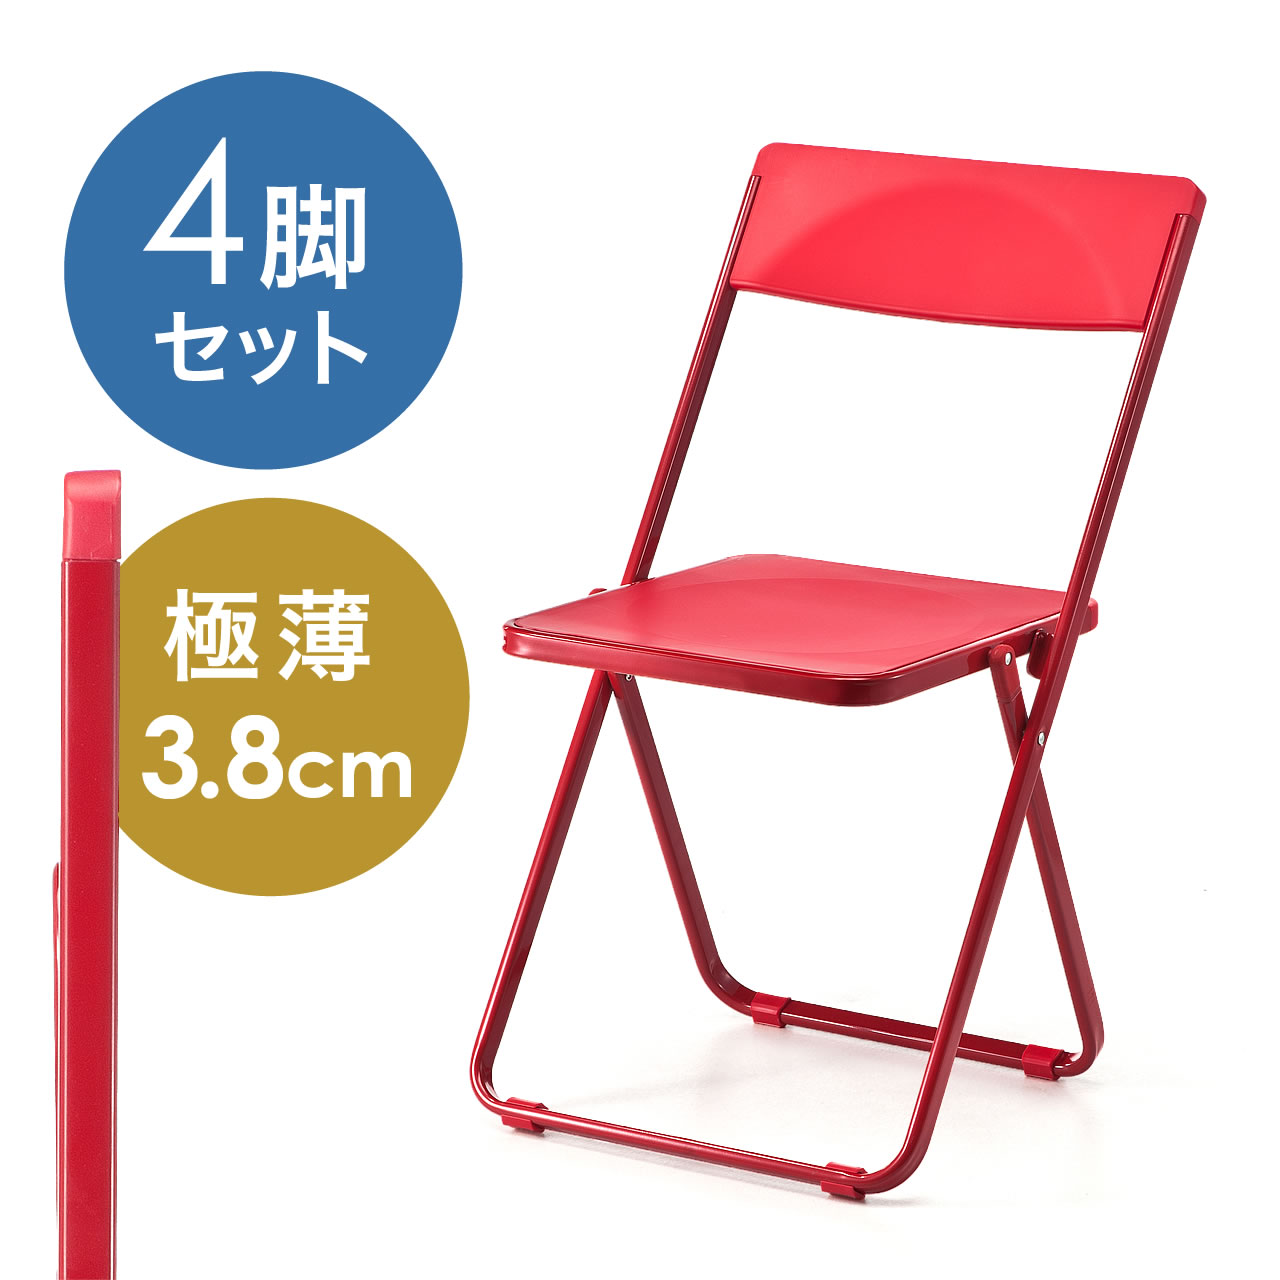 折りたたみ椅子 おしゃれ フォールディングチェア スタッキング可能 Slim 4脚セット レッド 150 Snch006rの販売商品 通販ならサンワダイレクト